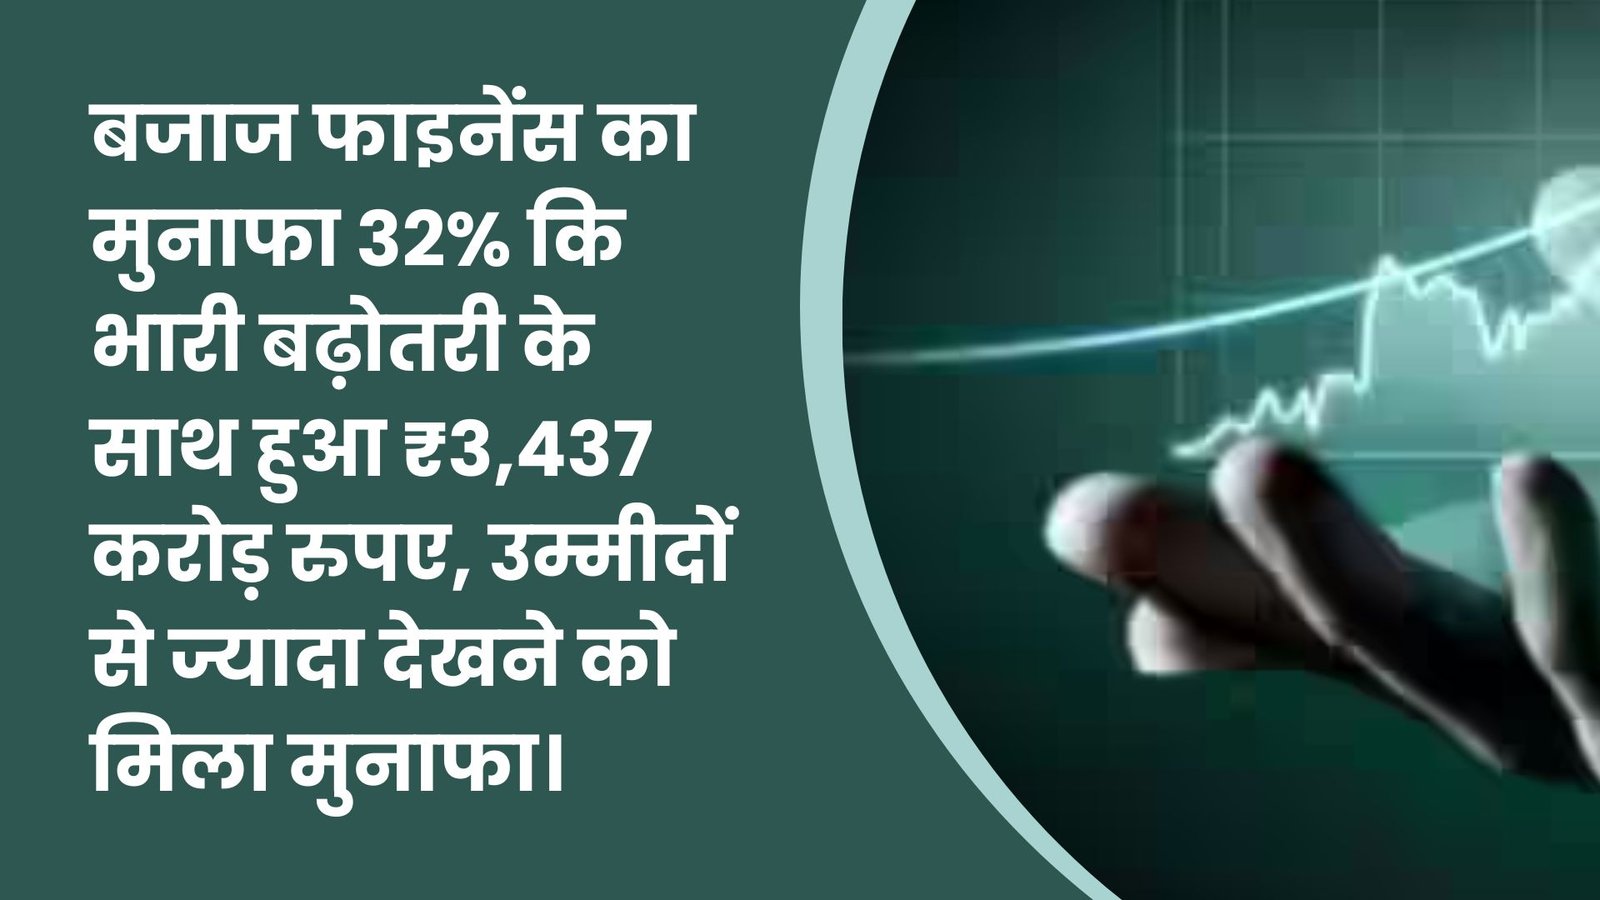 बजाज फाइनेंस का मुनाफा 32% कि भारी बढ़ोतरी के साथ हुआ ₹3,437 करोड़ रुपए, उम्मीदों से ज्यादा देखने को मिला मुनाफा।